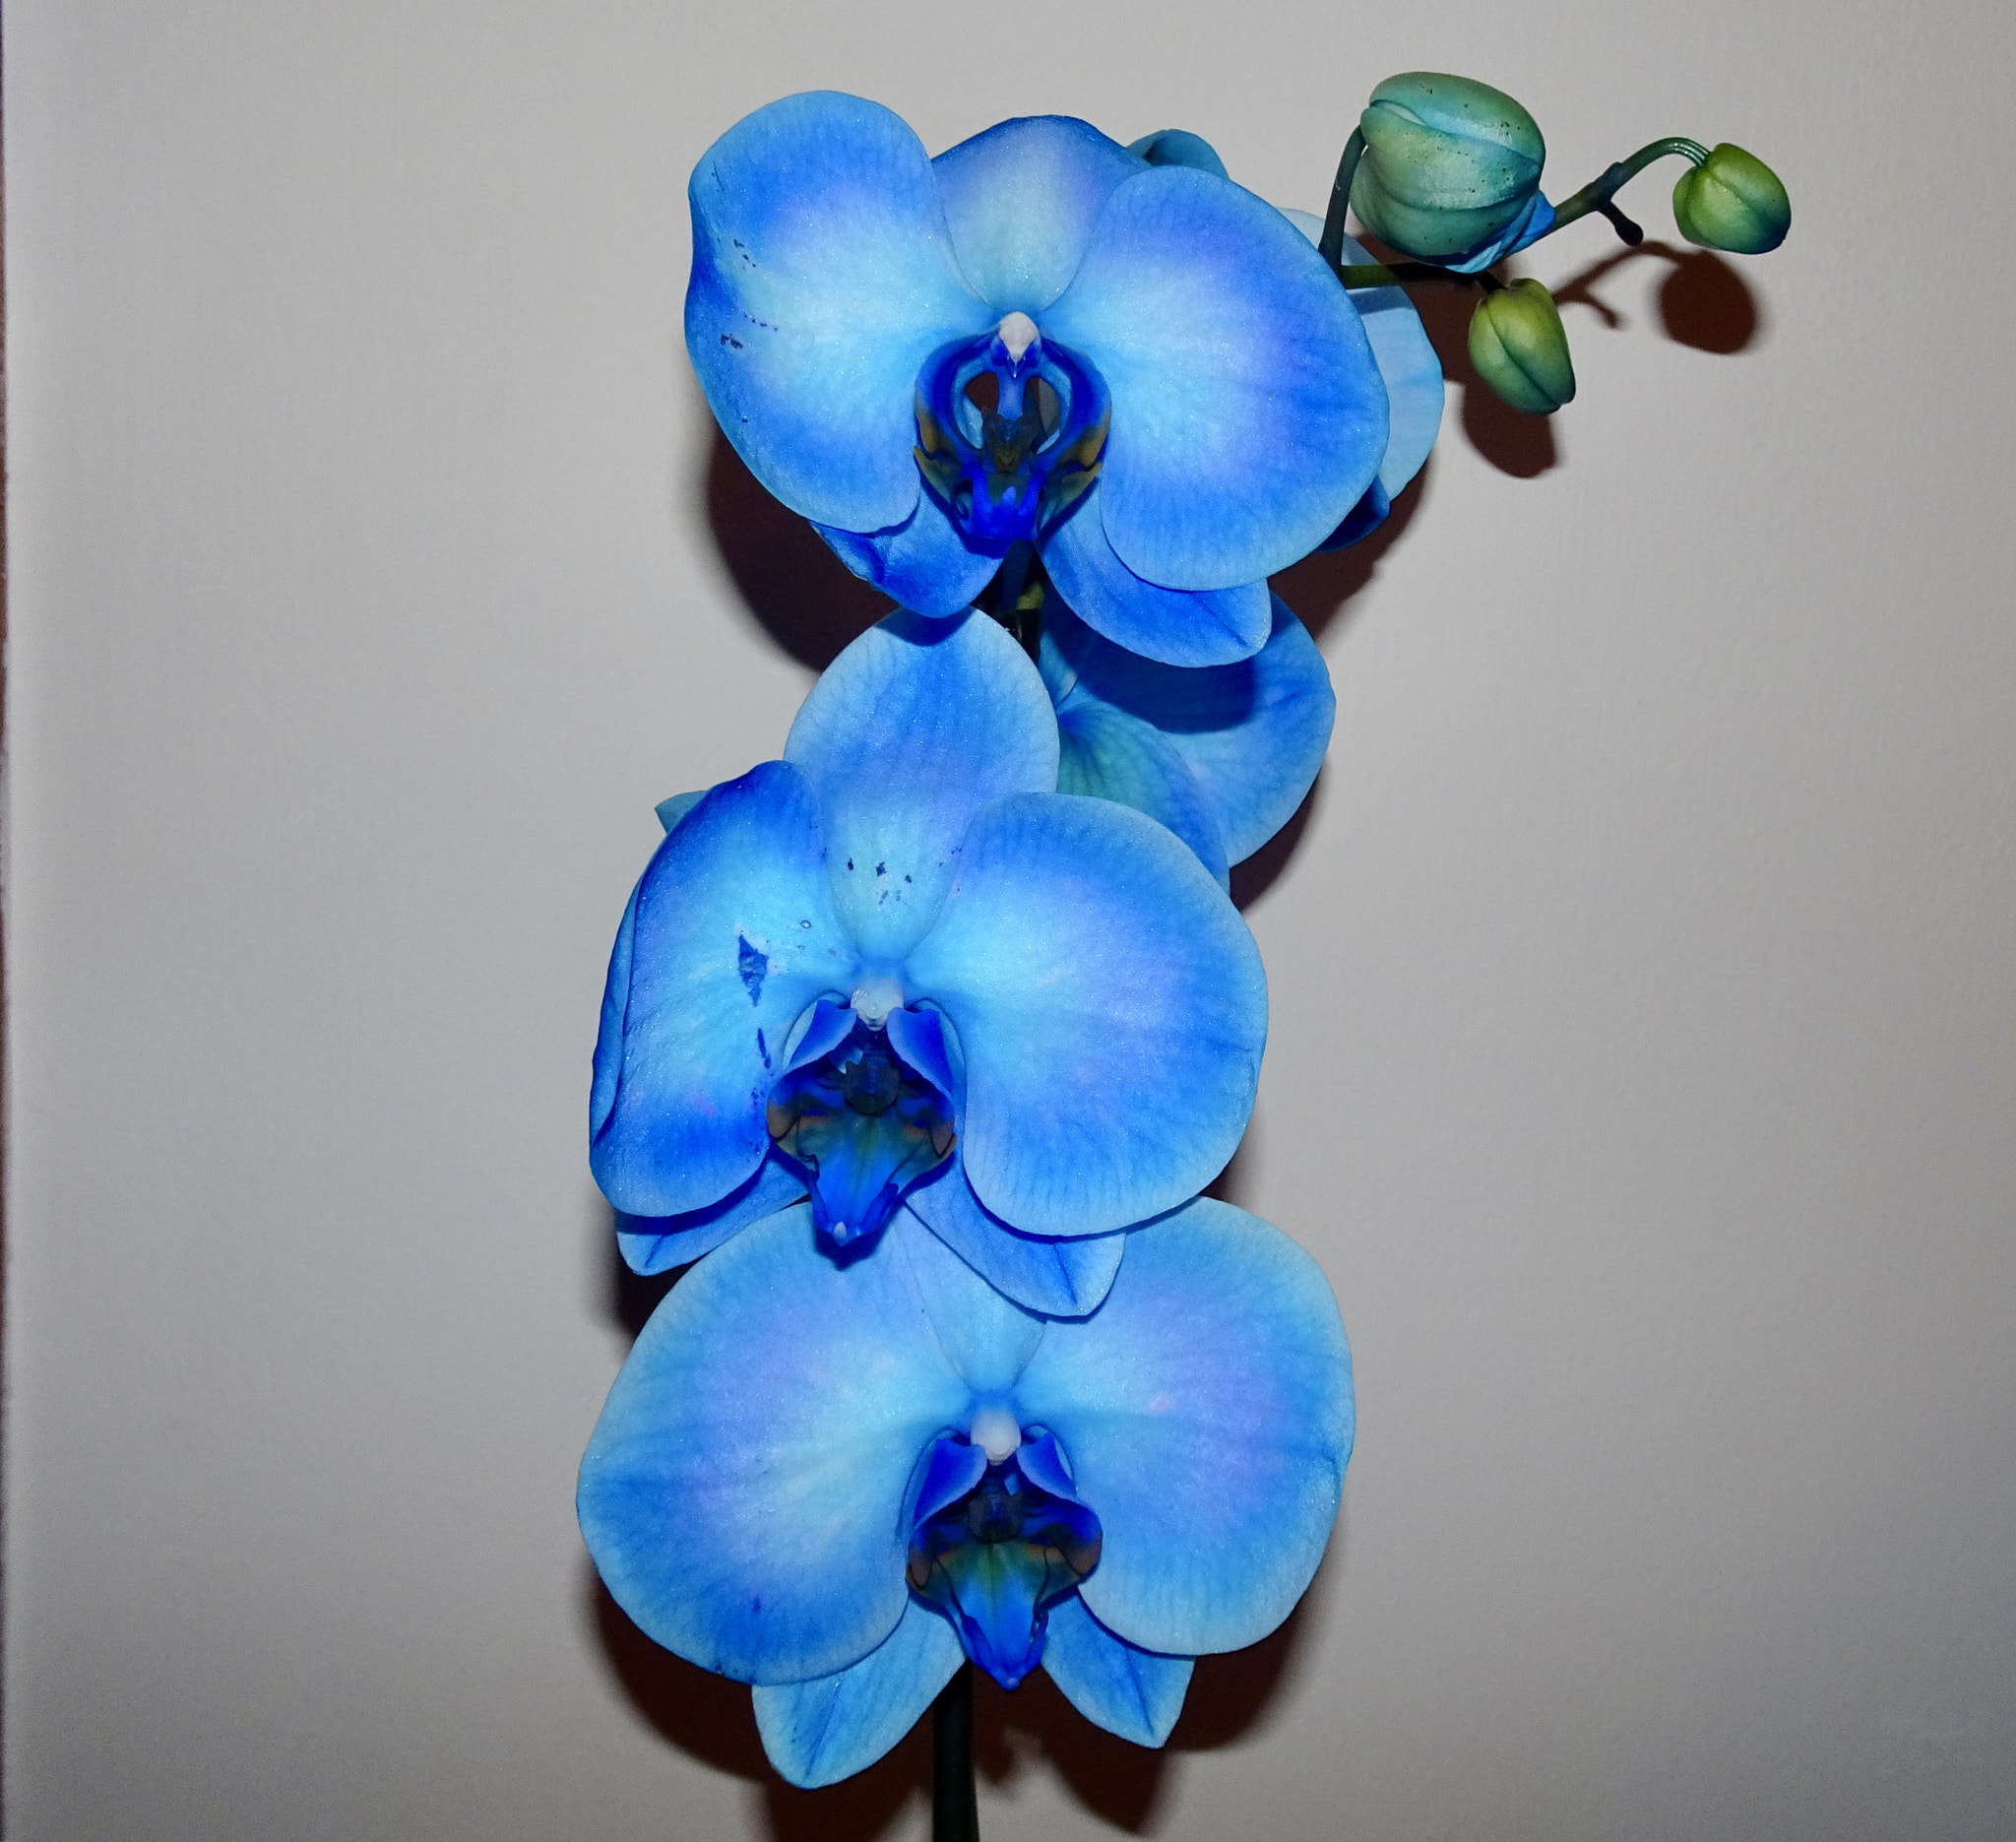 Sony Cyber-shot DSC-HX90V sample photo. "blue orchid" photography